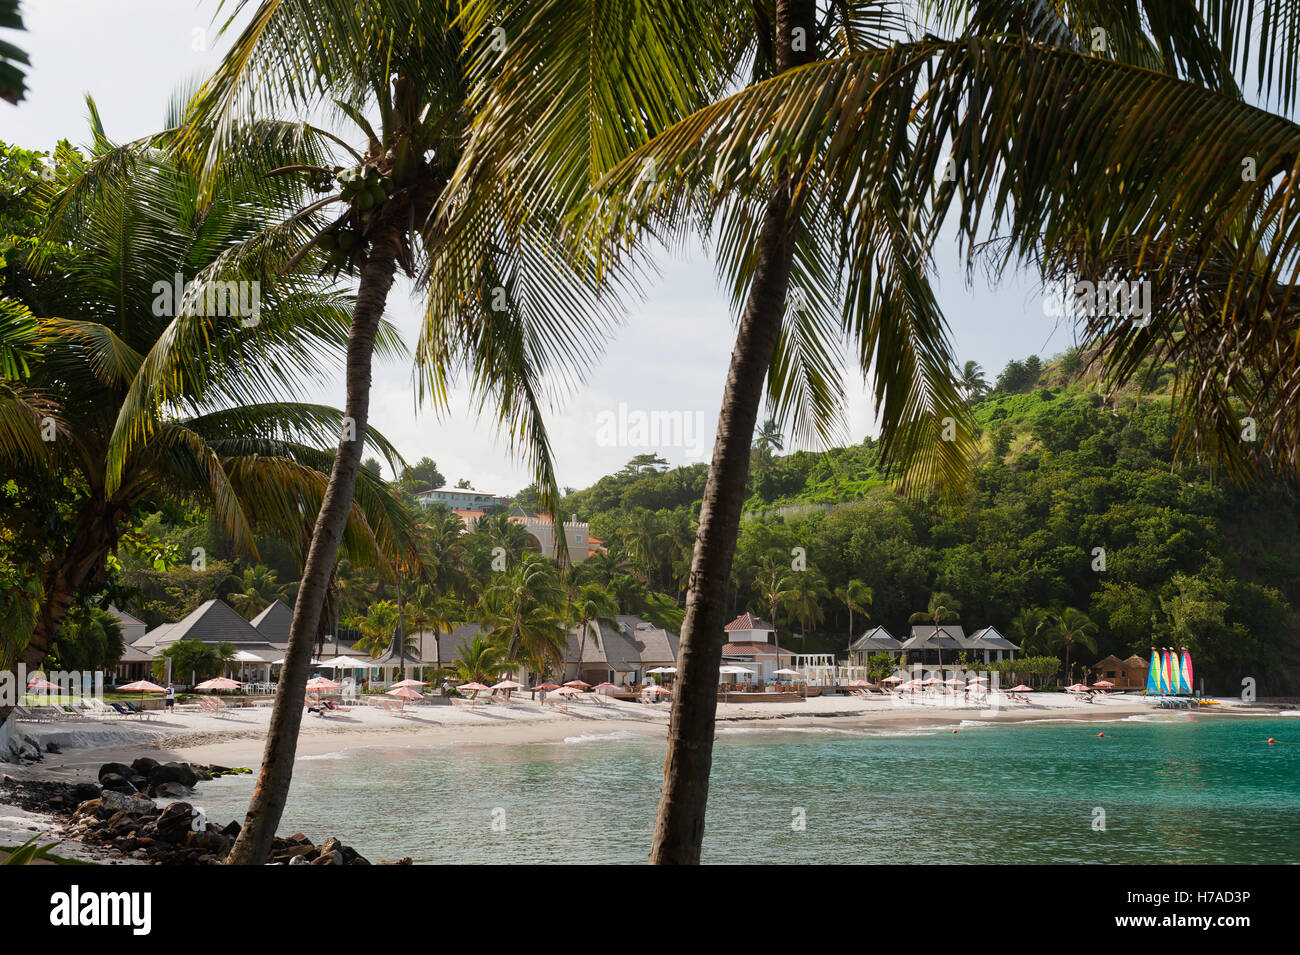 Plage isolée resort sur l'île des Caraïbes de St Lucia Banque D'Images